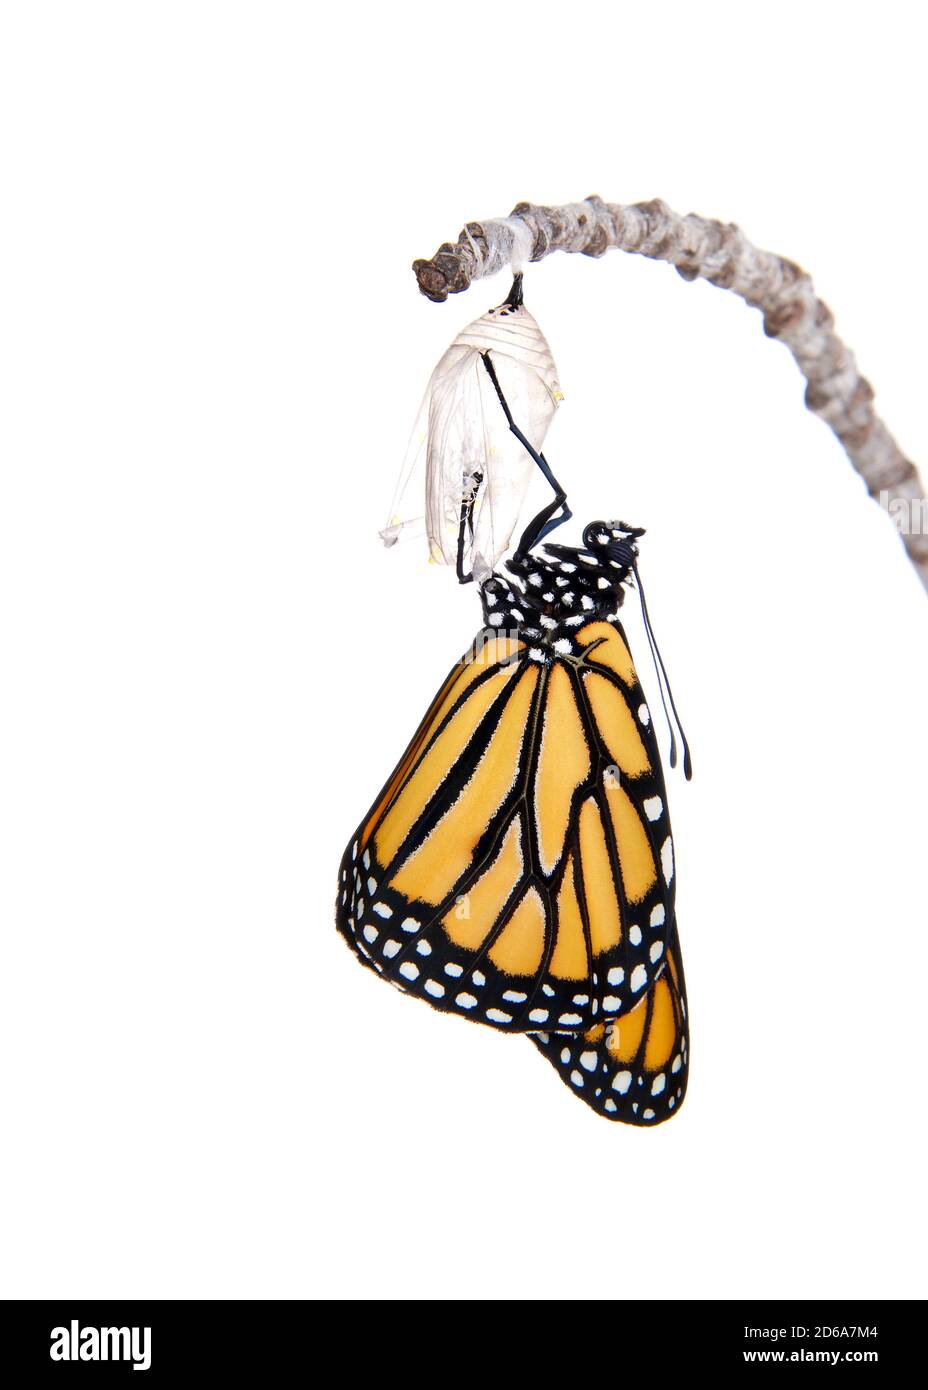 Primo piano di una farfalla monarca appena emersa da crisalide appeso su un piccolo ramo. Ali completamente estese, asciugando. Isolato su bianco. Foto Stock